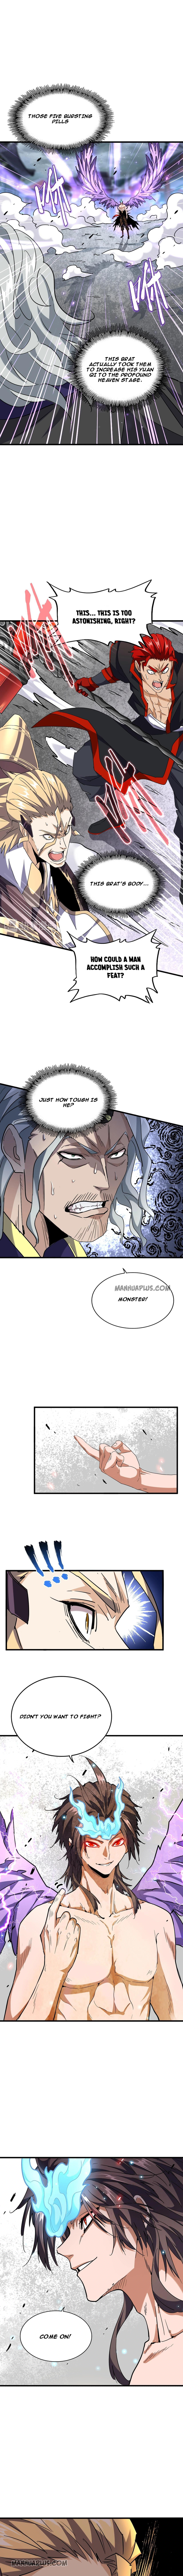 Magic Emperor Chapter 196 page 4 - Mangakakalot